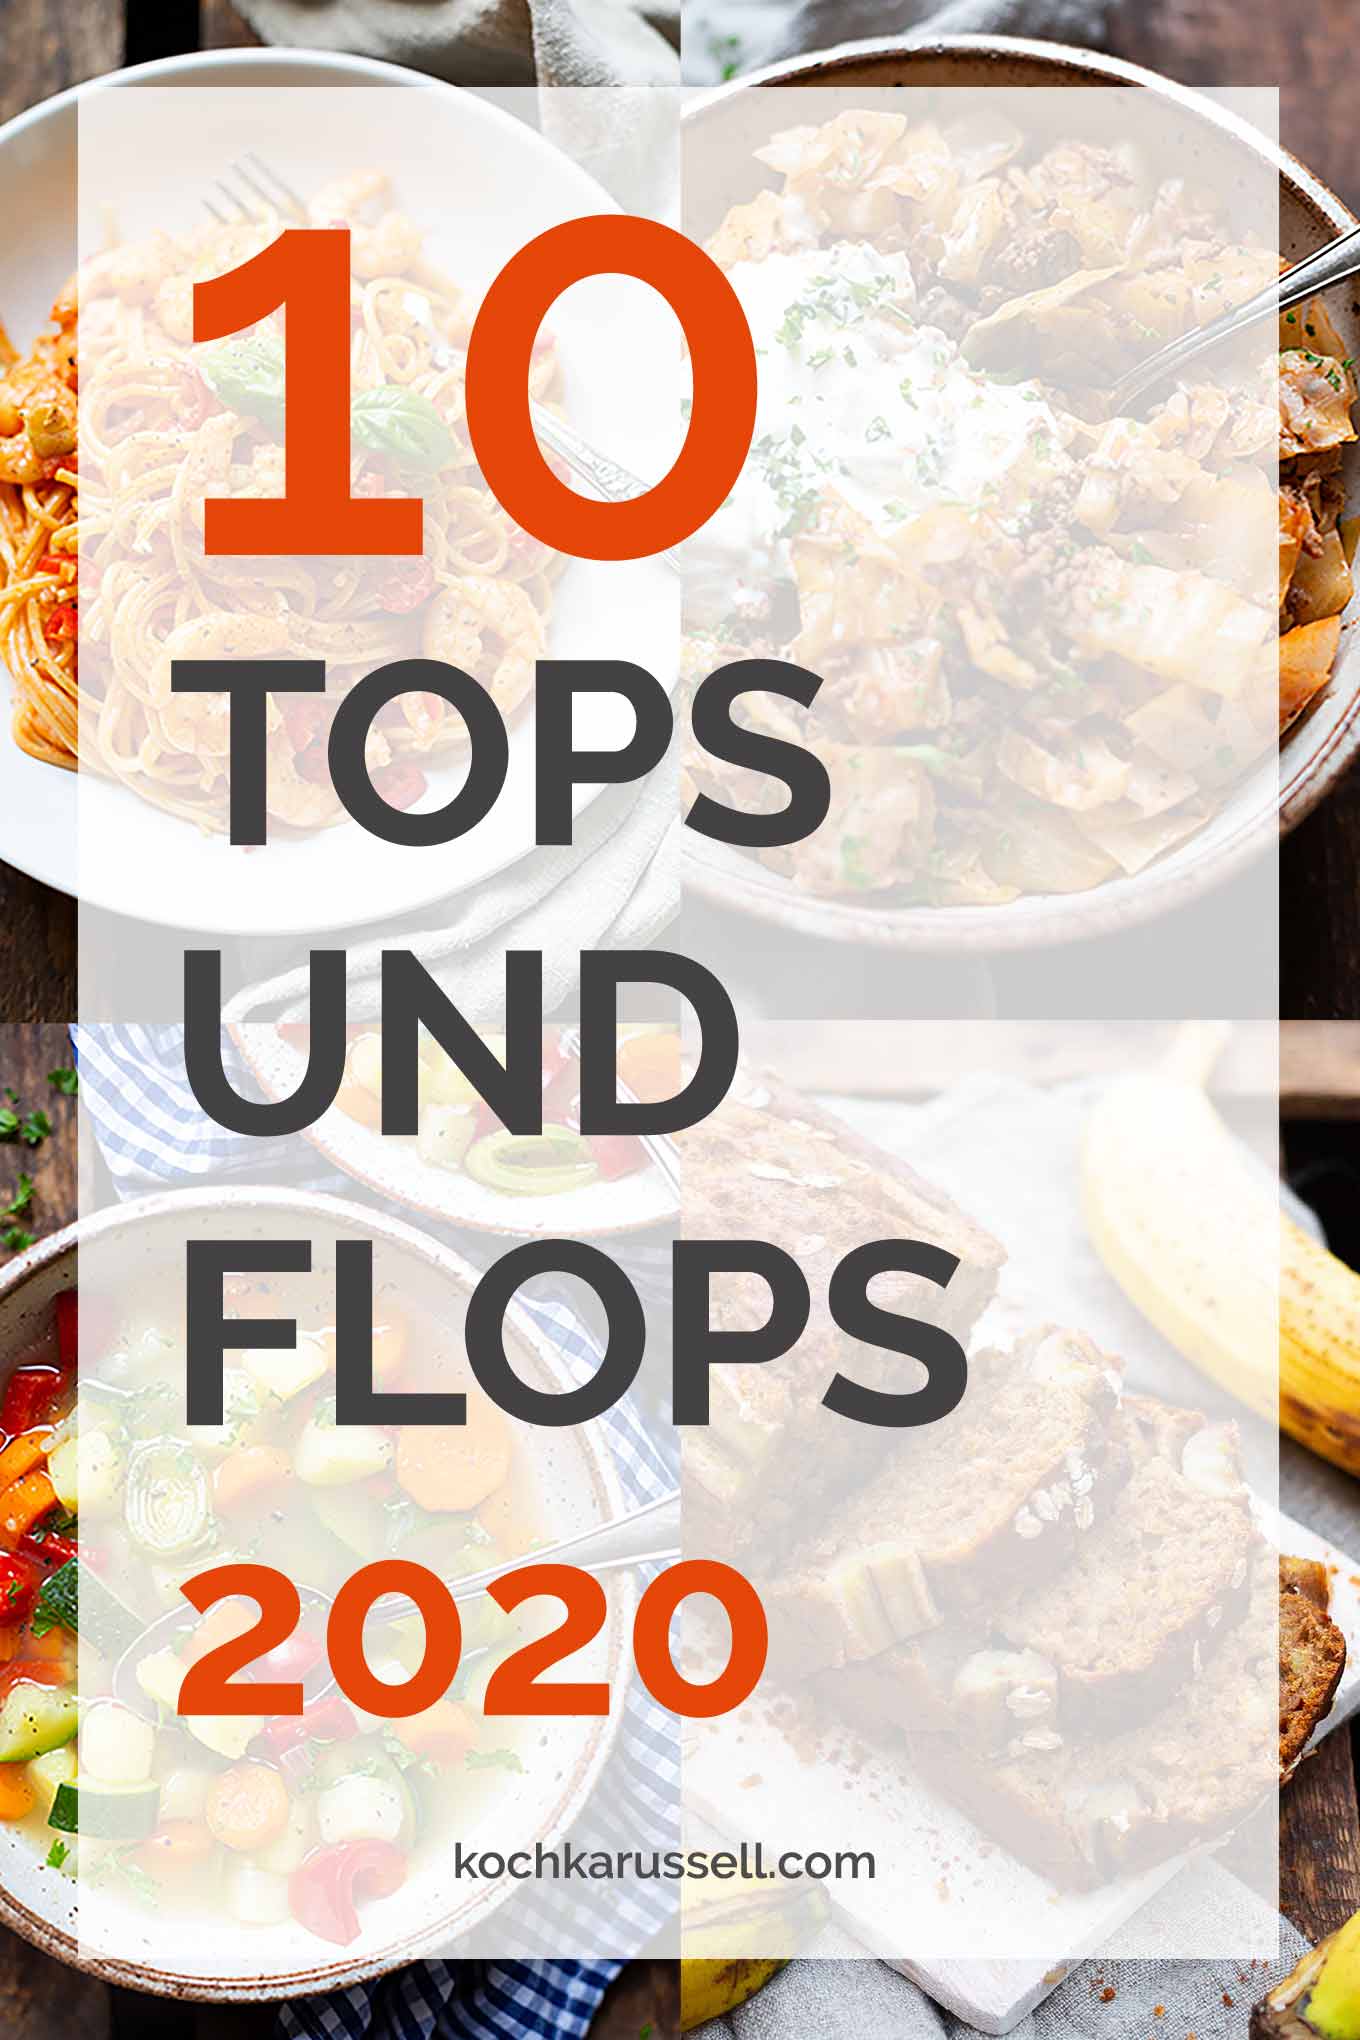 Kochkarussell Jahresrückblick 2020 - Die 10 Top- und Flop-Rezepte in diesem Jahr Kochkarussell Foodblog #jahresrückblick #kochkarussell #foodblog